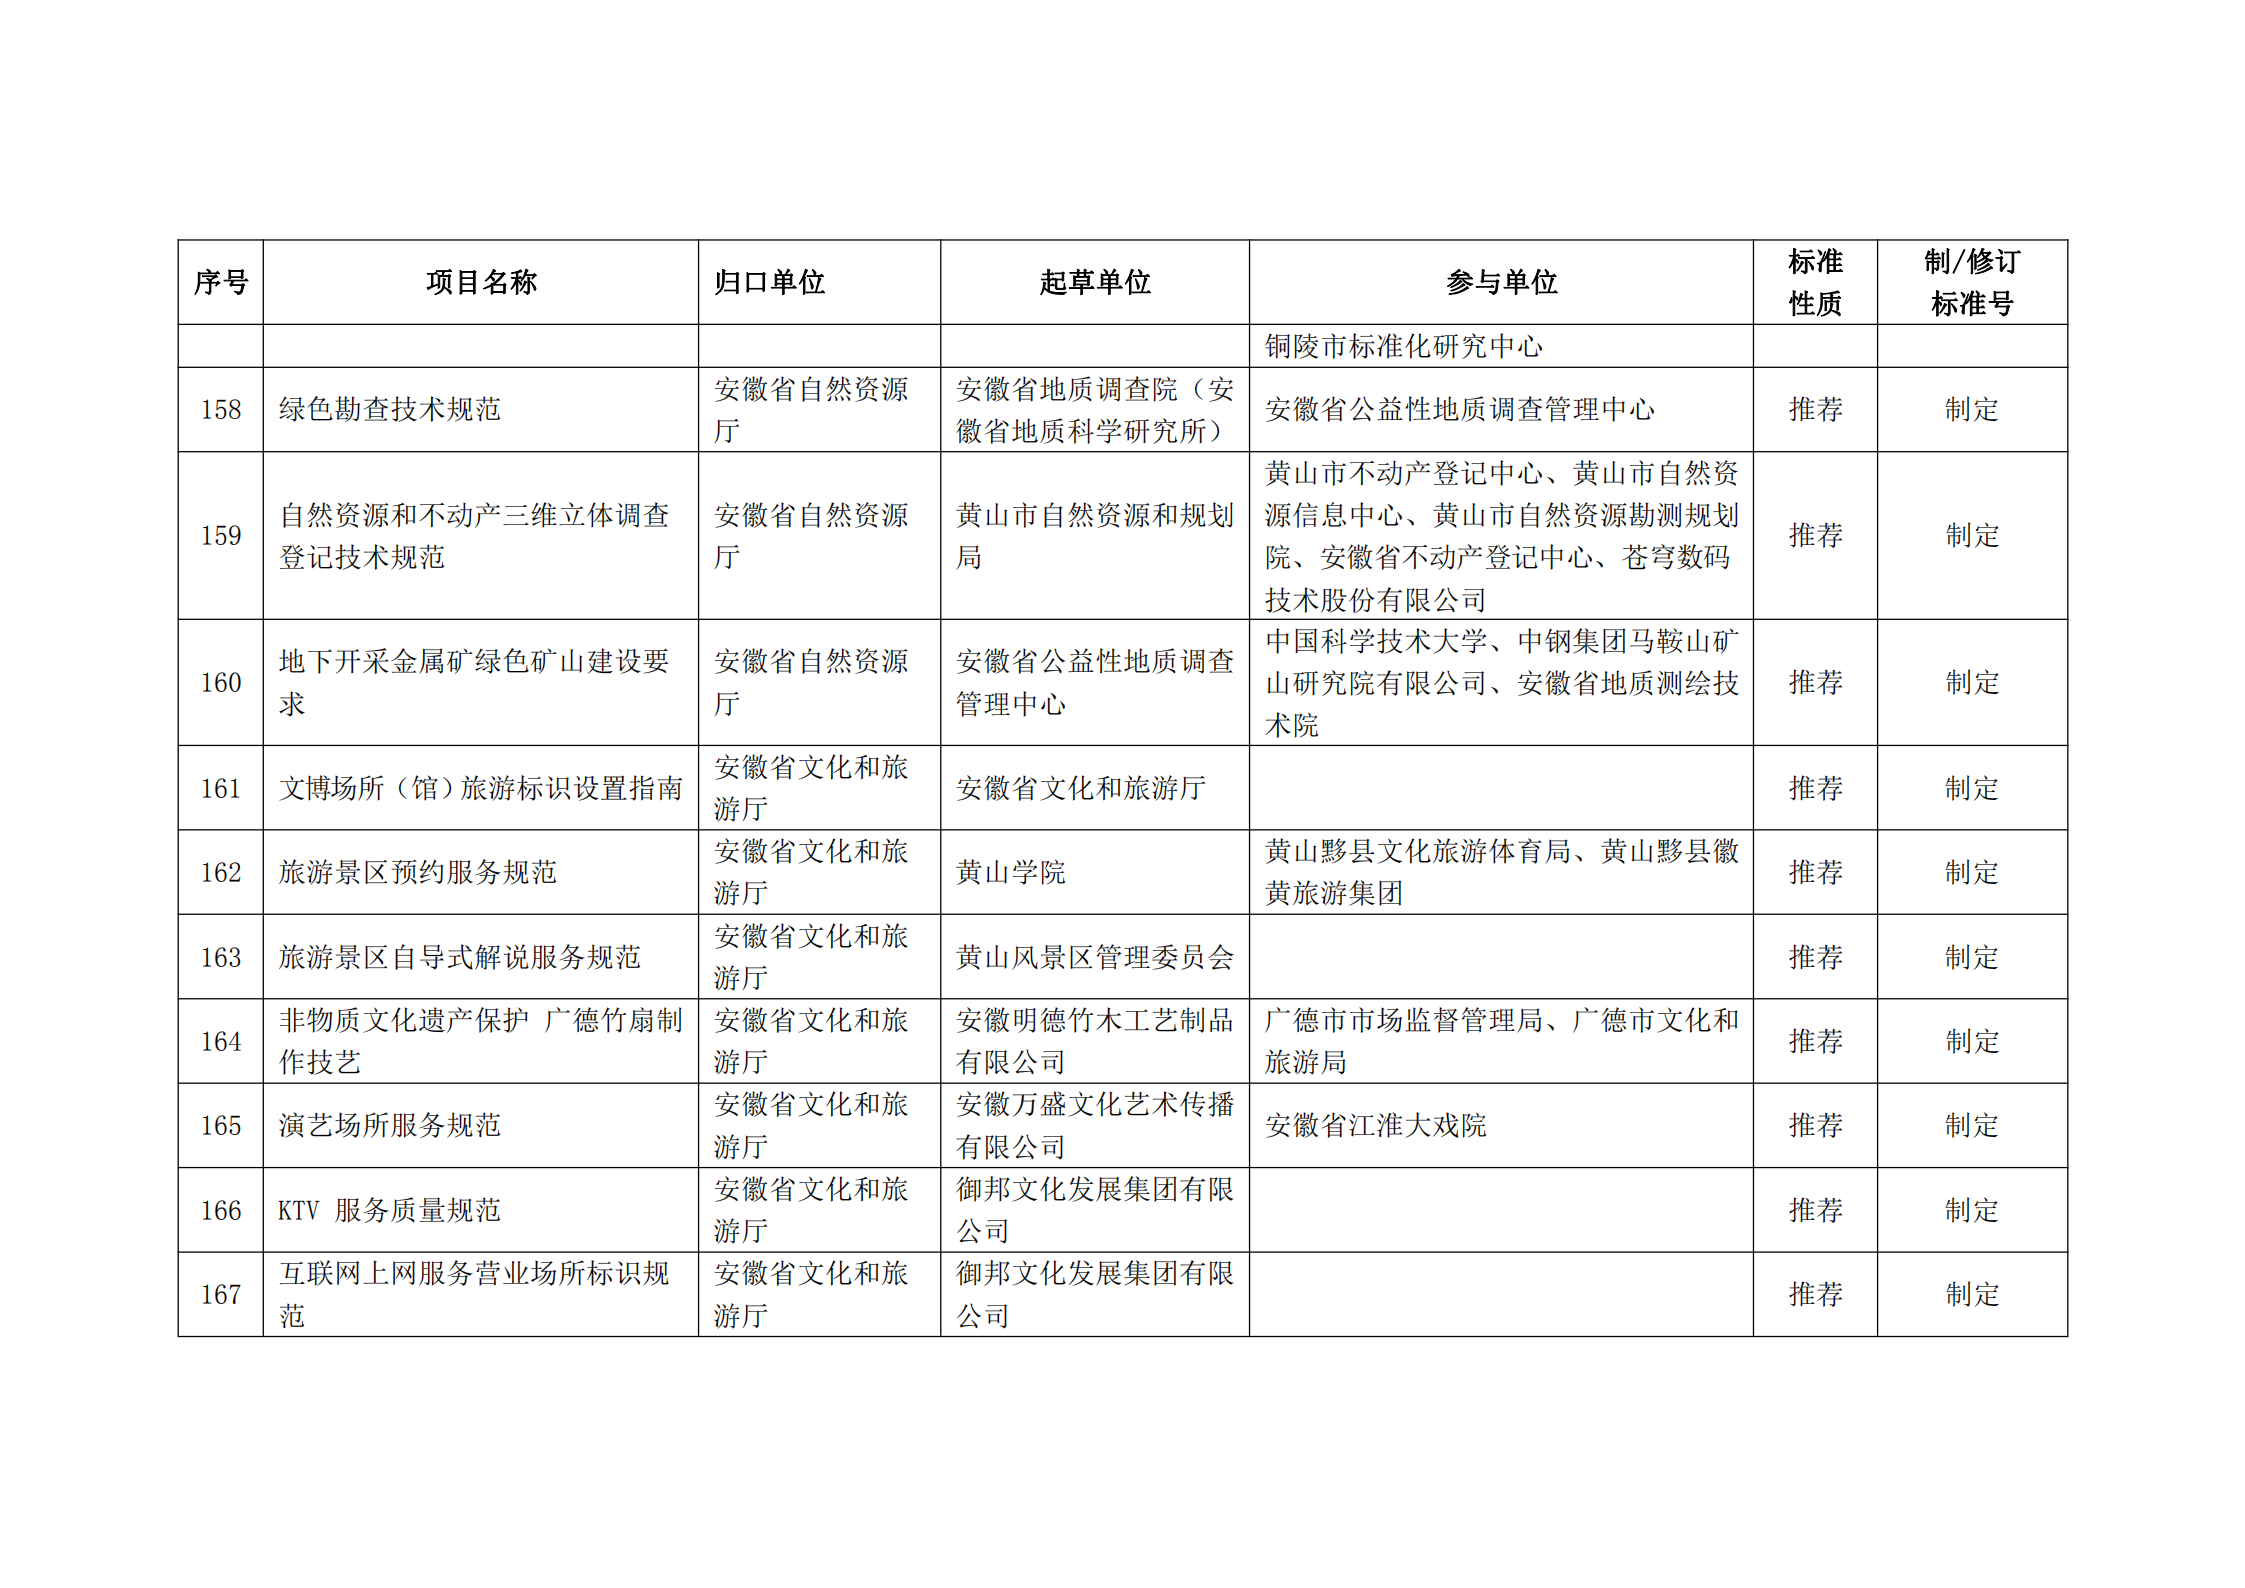 2020 年第二批安徽省地方标准制、修订计划项目汇总表(图19)